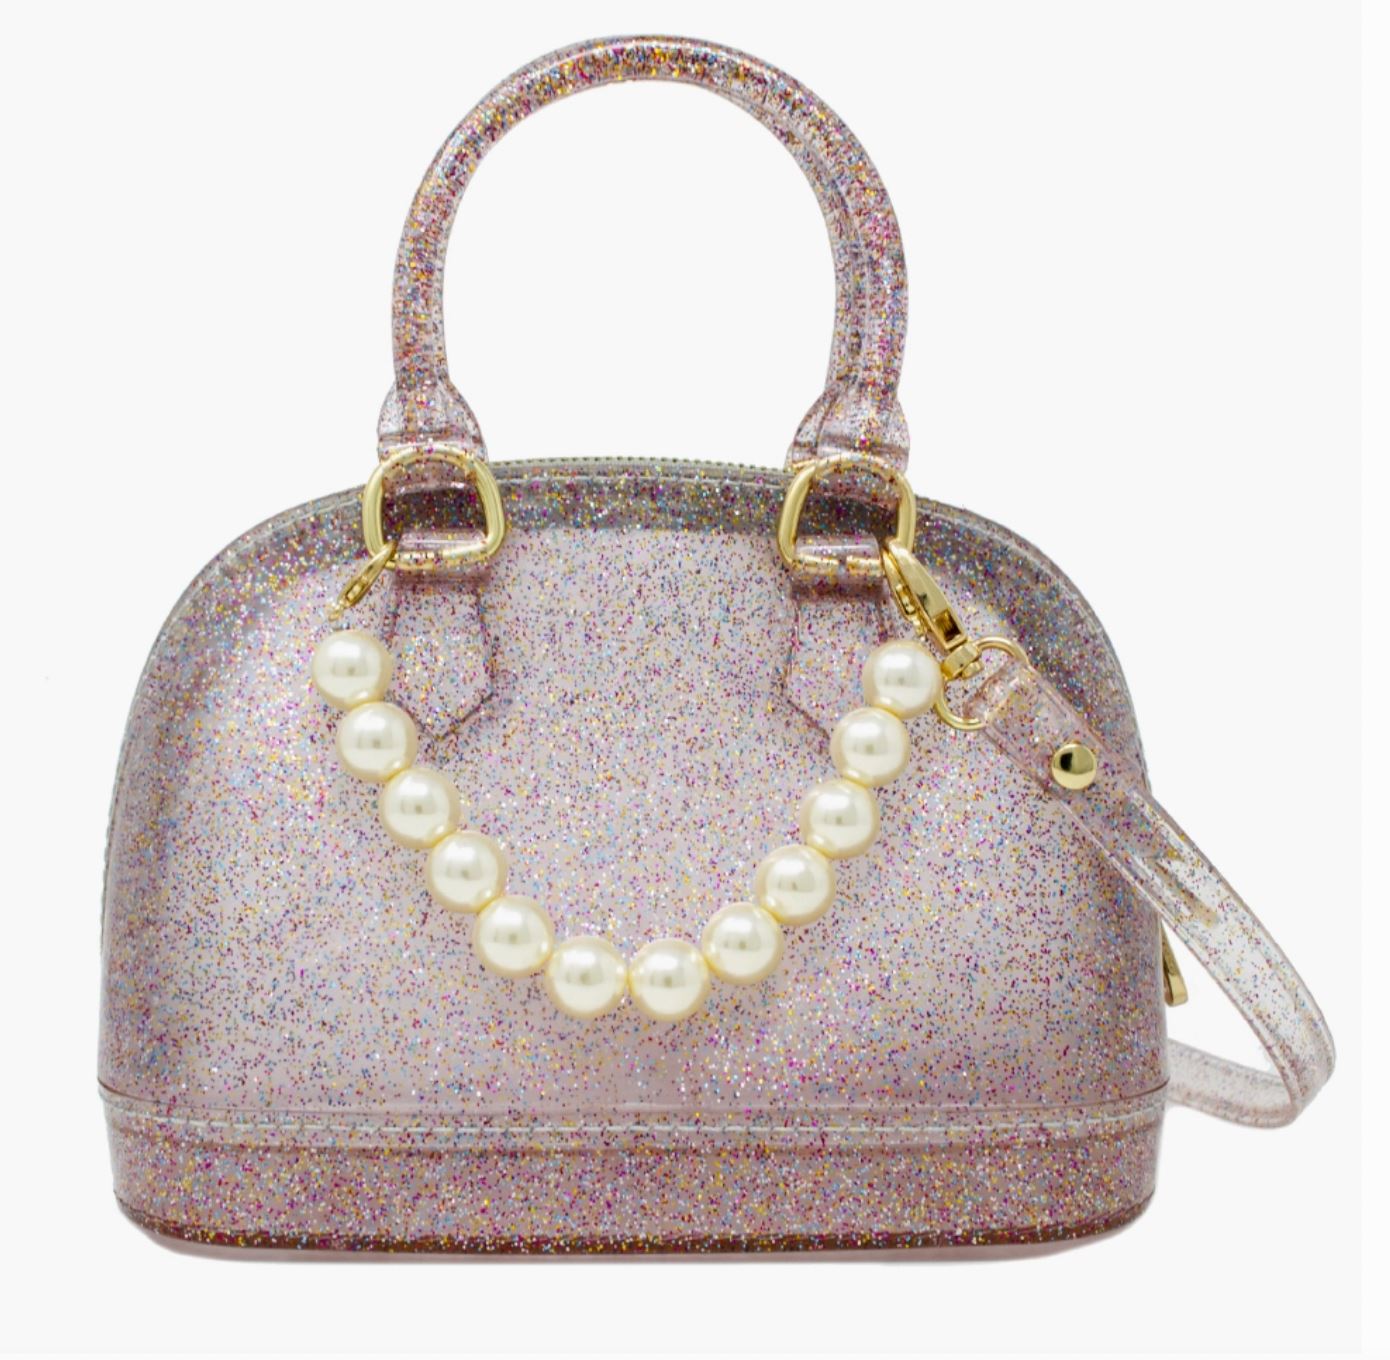 Jelly Bowling Crossbody Handbag with Pearls tiny treats 